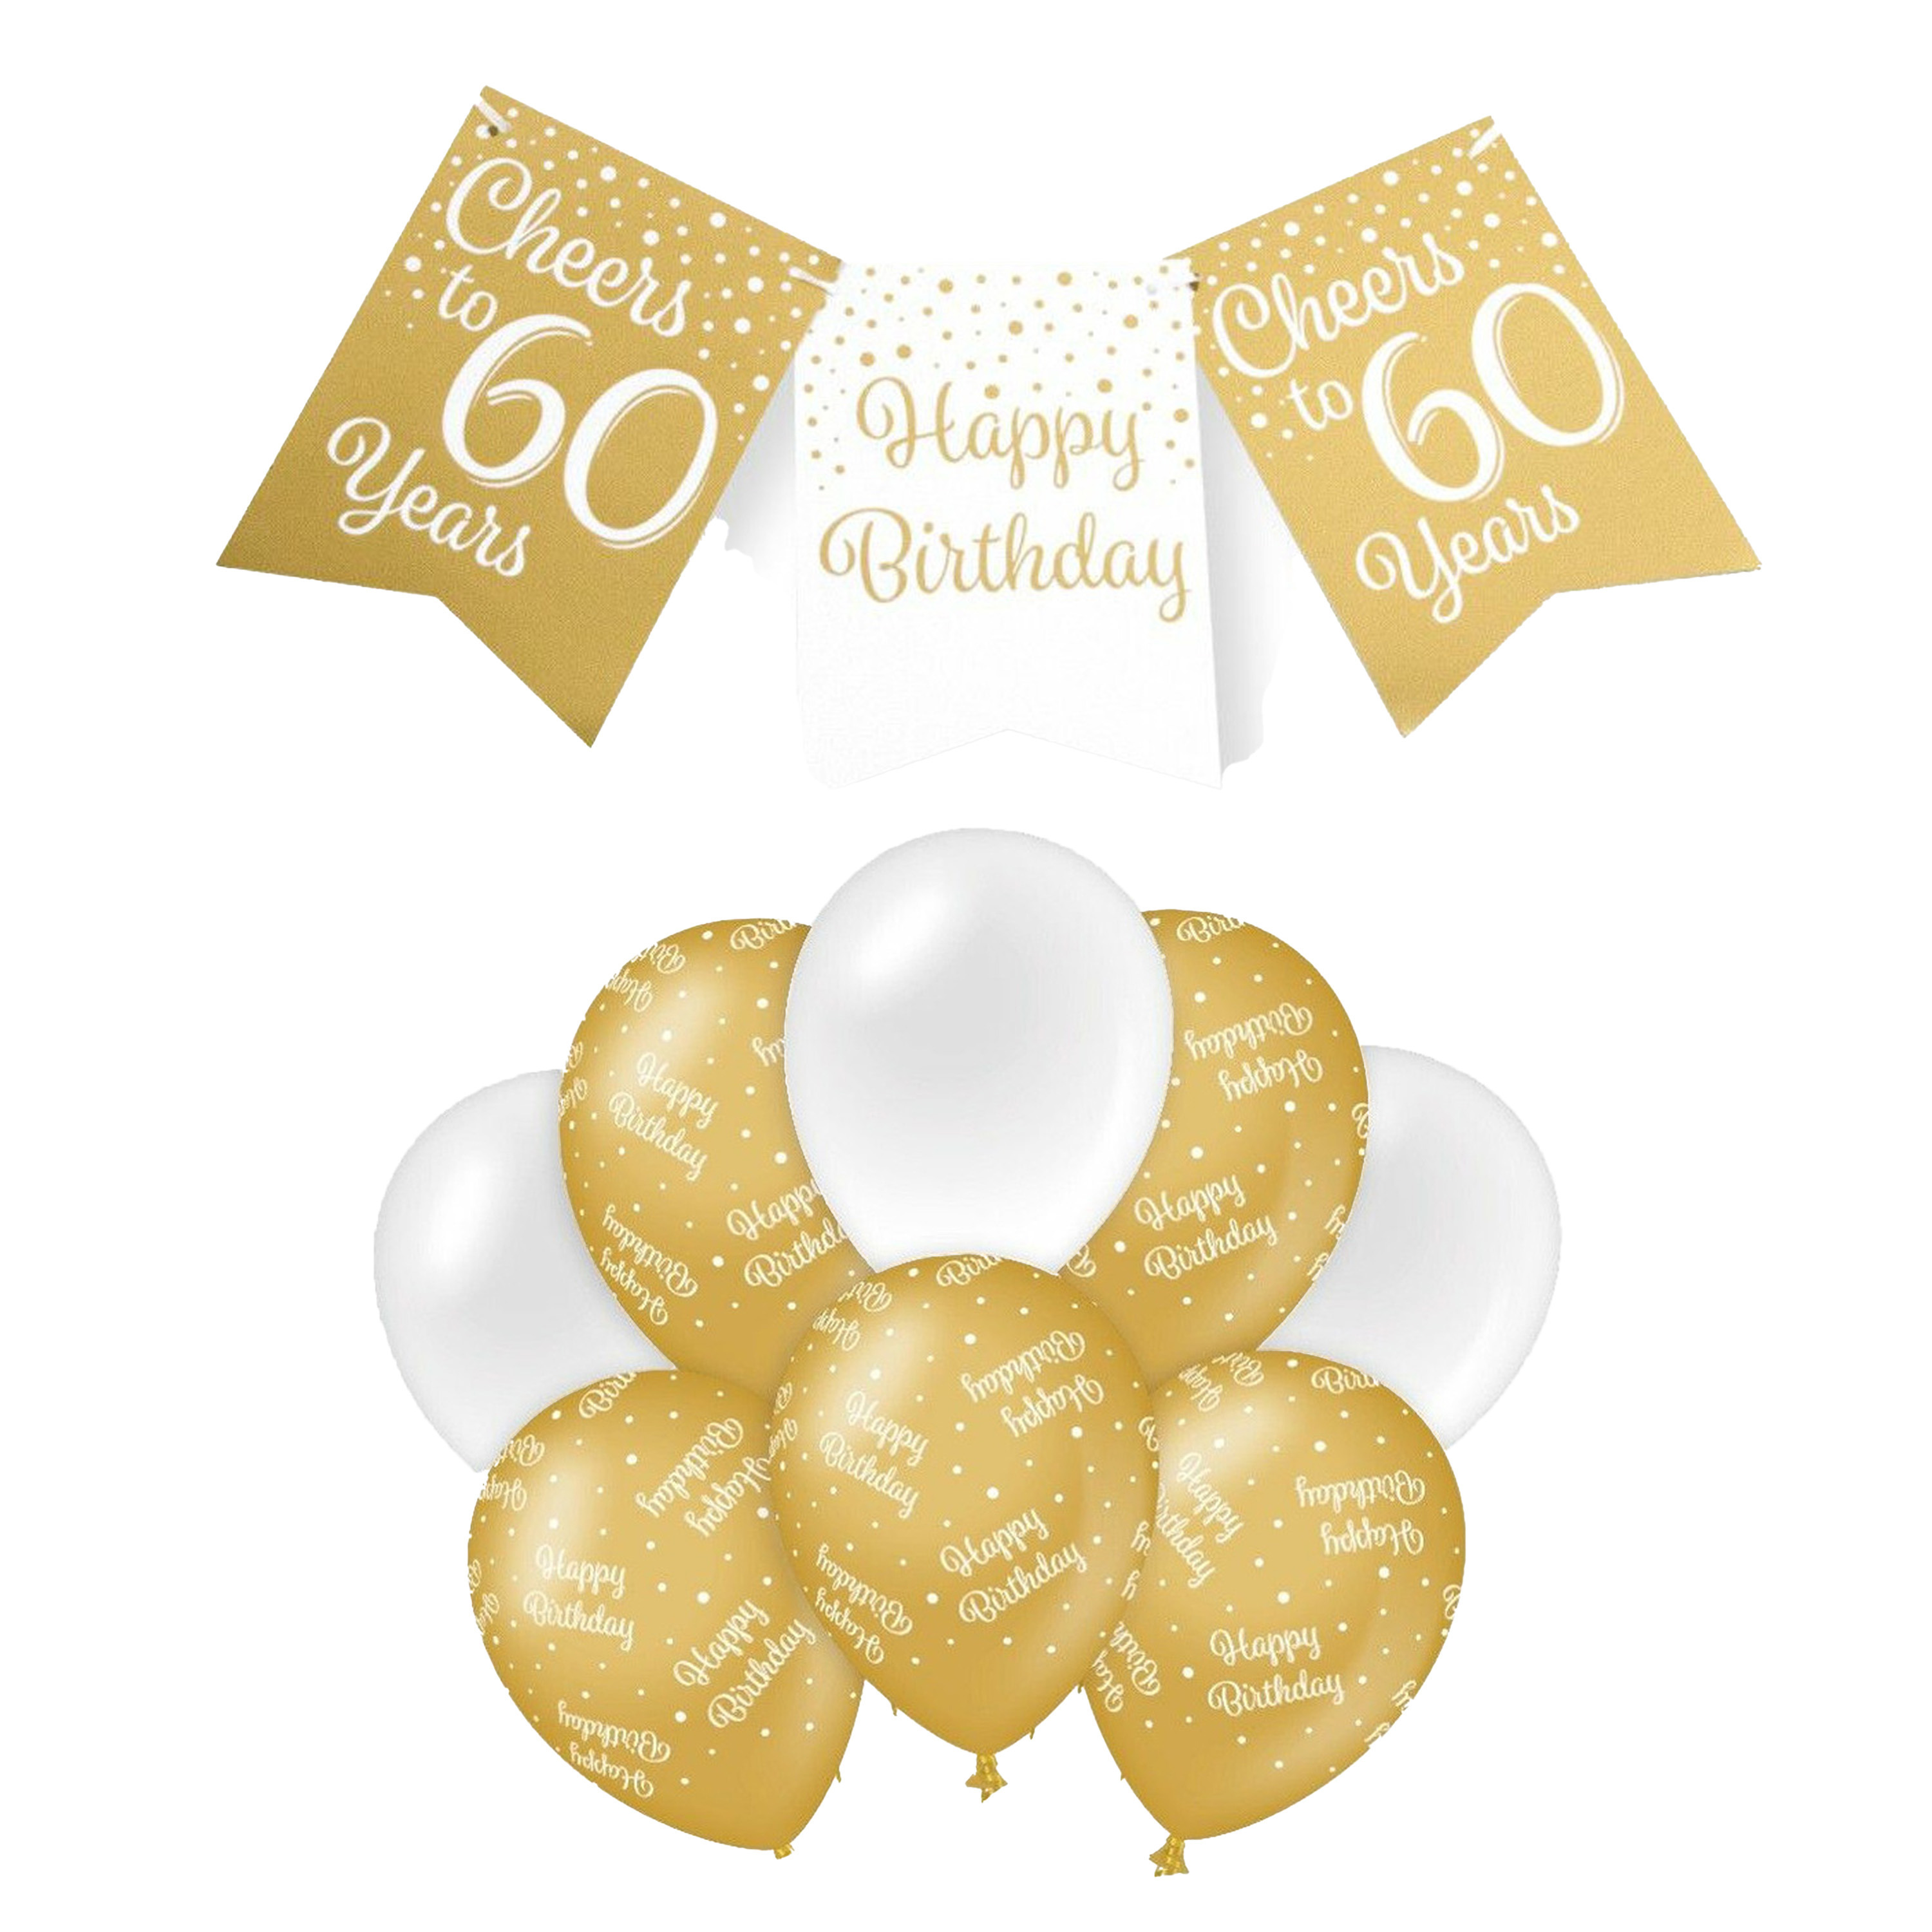 Paperdreams Luxe 60 jaar feestversiering set Ballonnen & vlaggenlijnen wit-goud